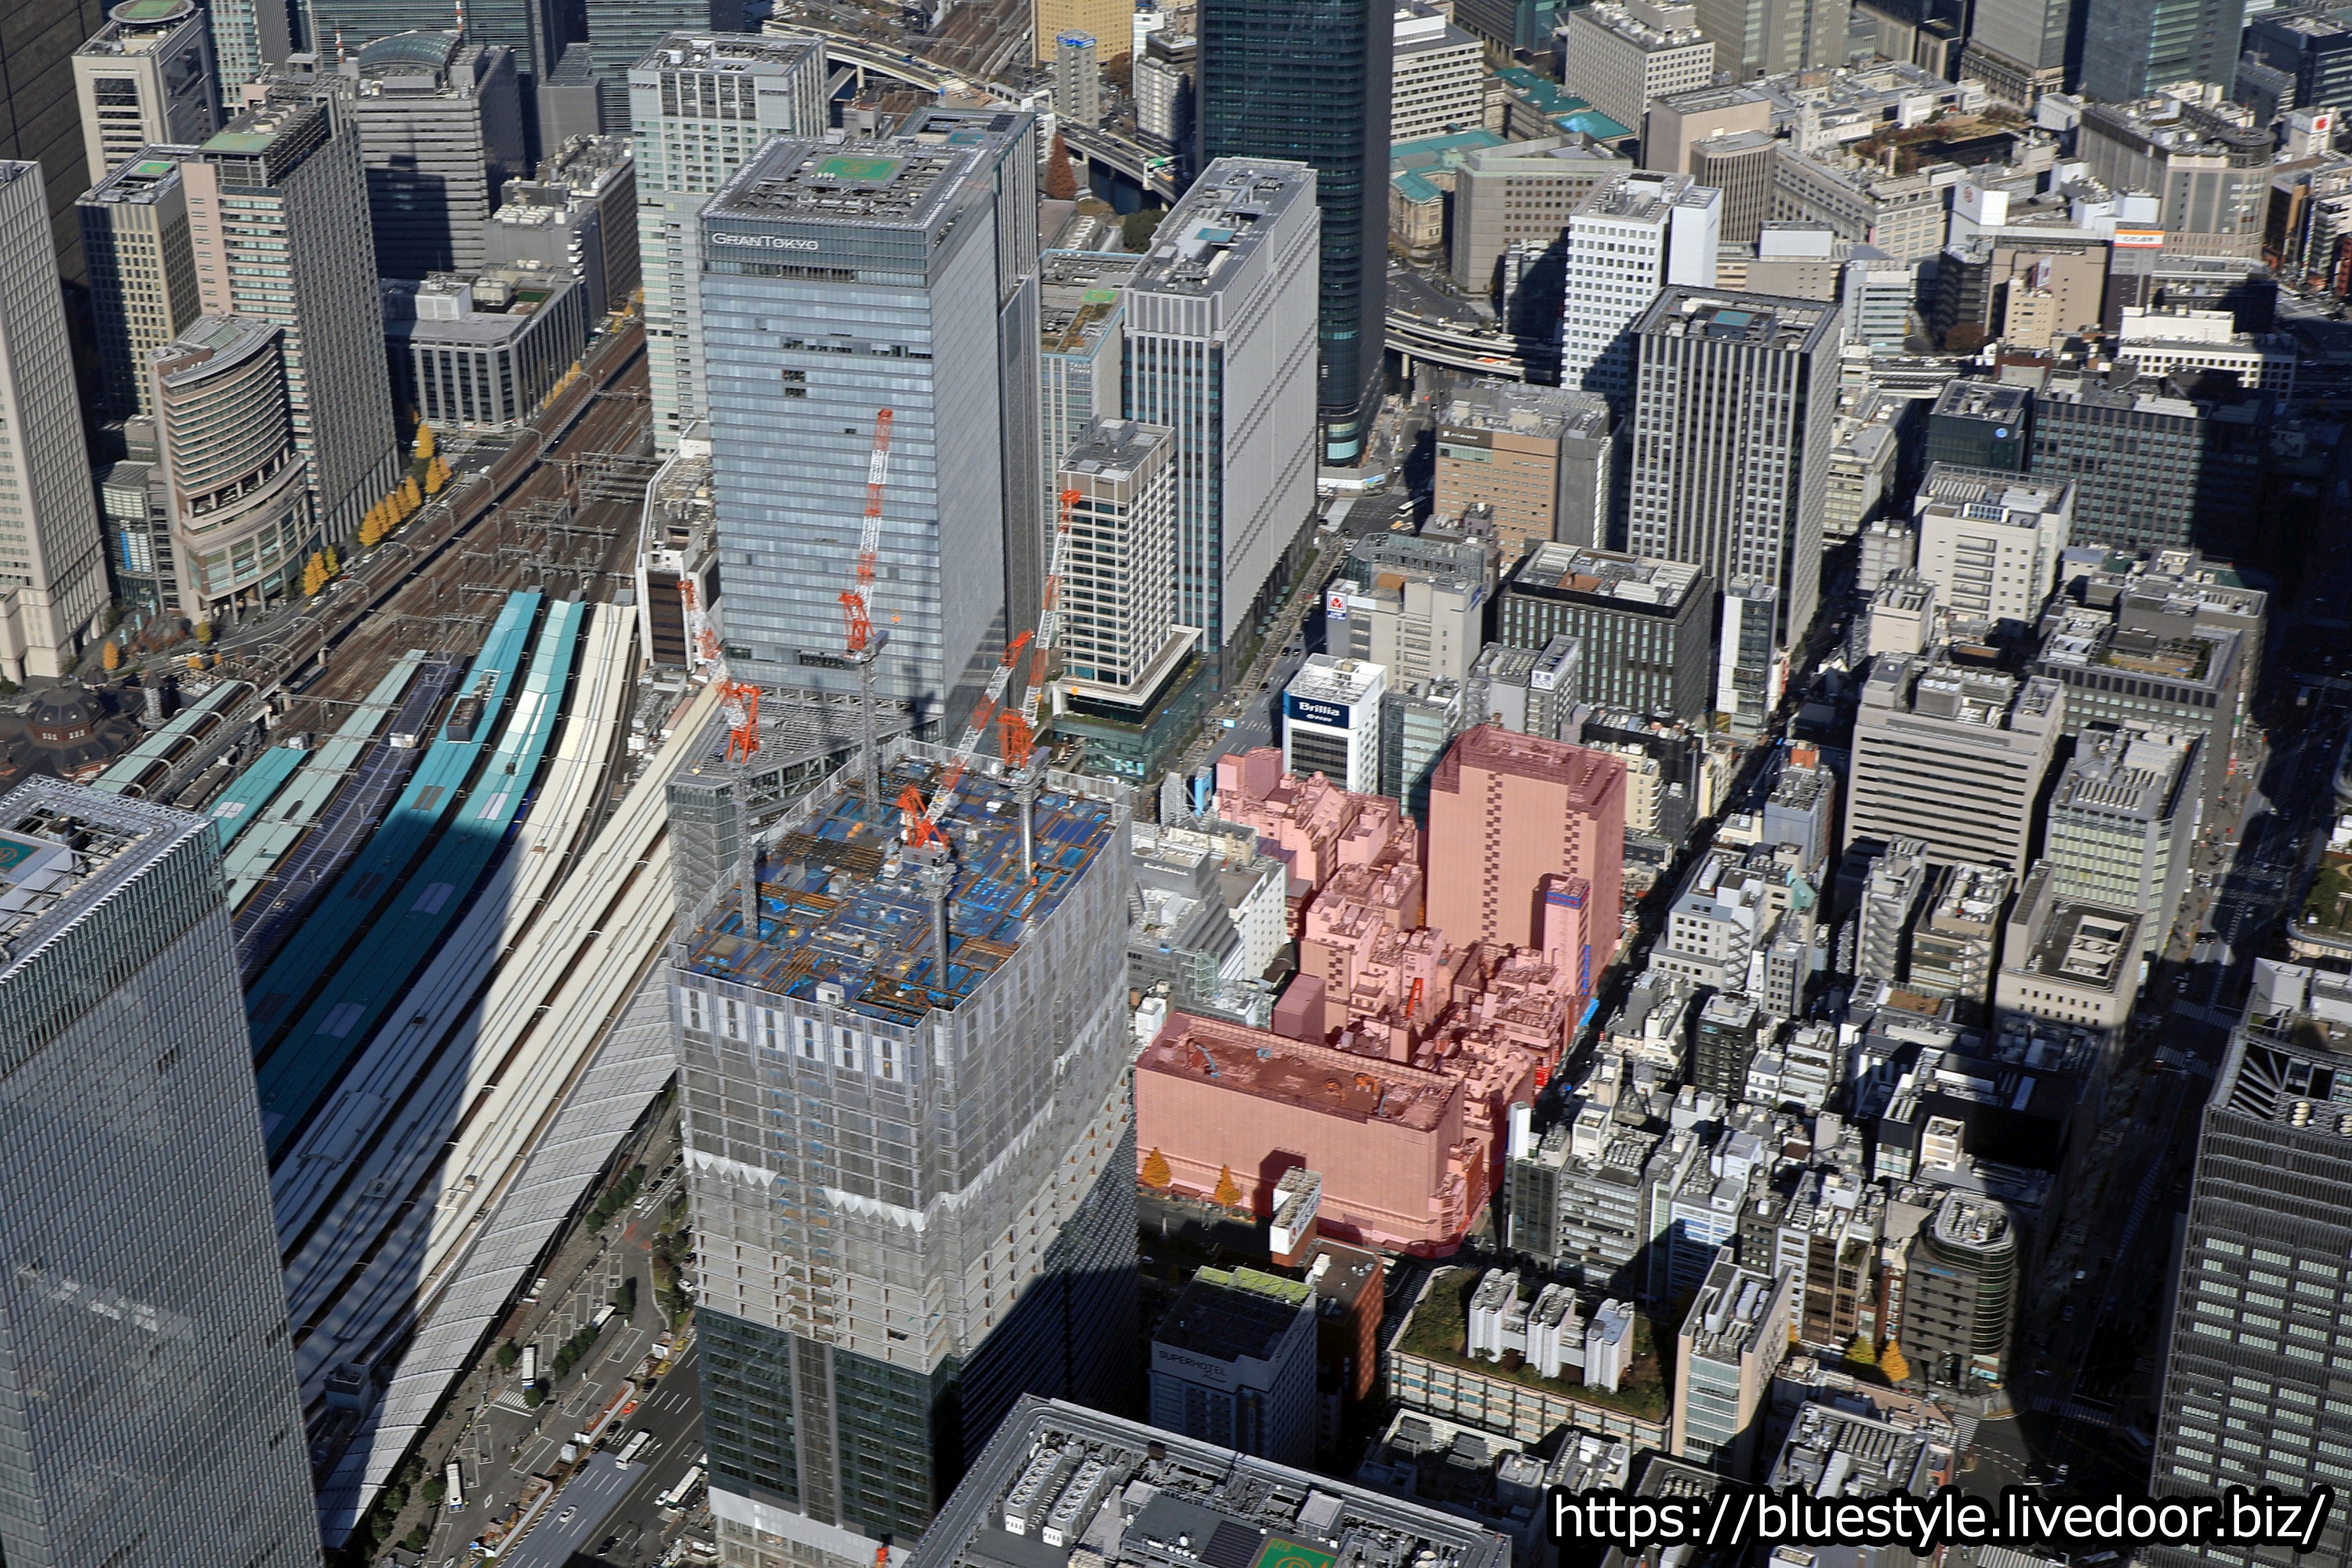 地上51階 高さ250m 東京駅前八重洲一丁目東b地区第一種市街地再開発事業 の既存ビル解体状況 空撮5枚掲載しています 12 18 19 超高層マンション 超高層ビル